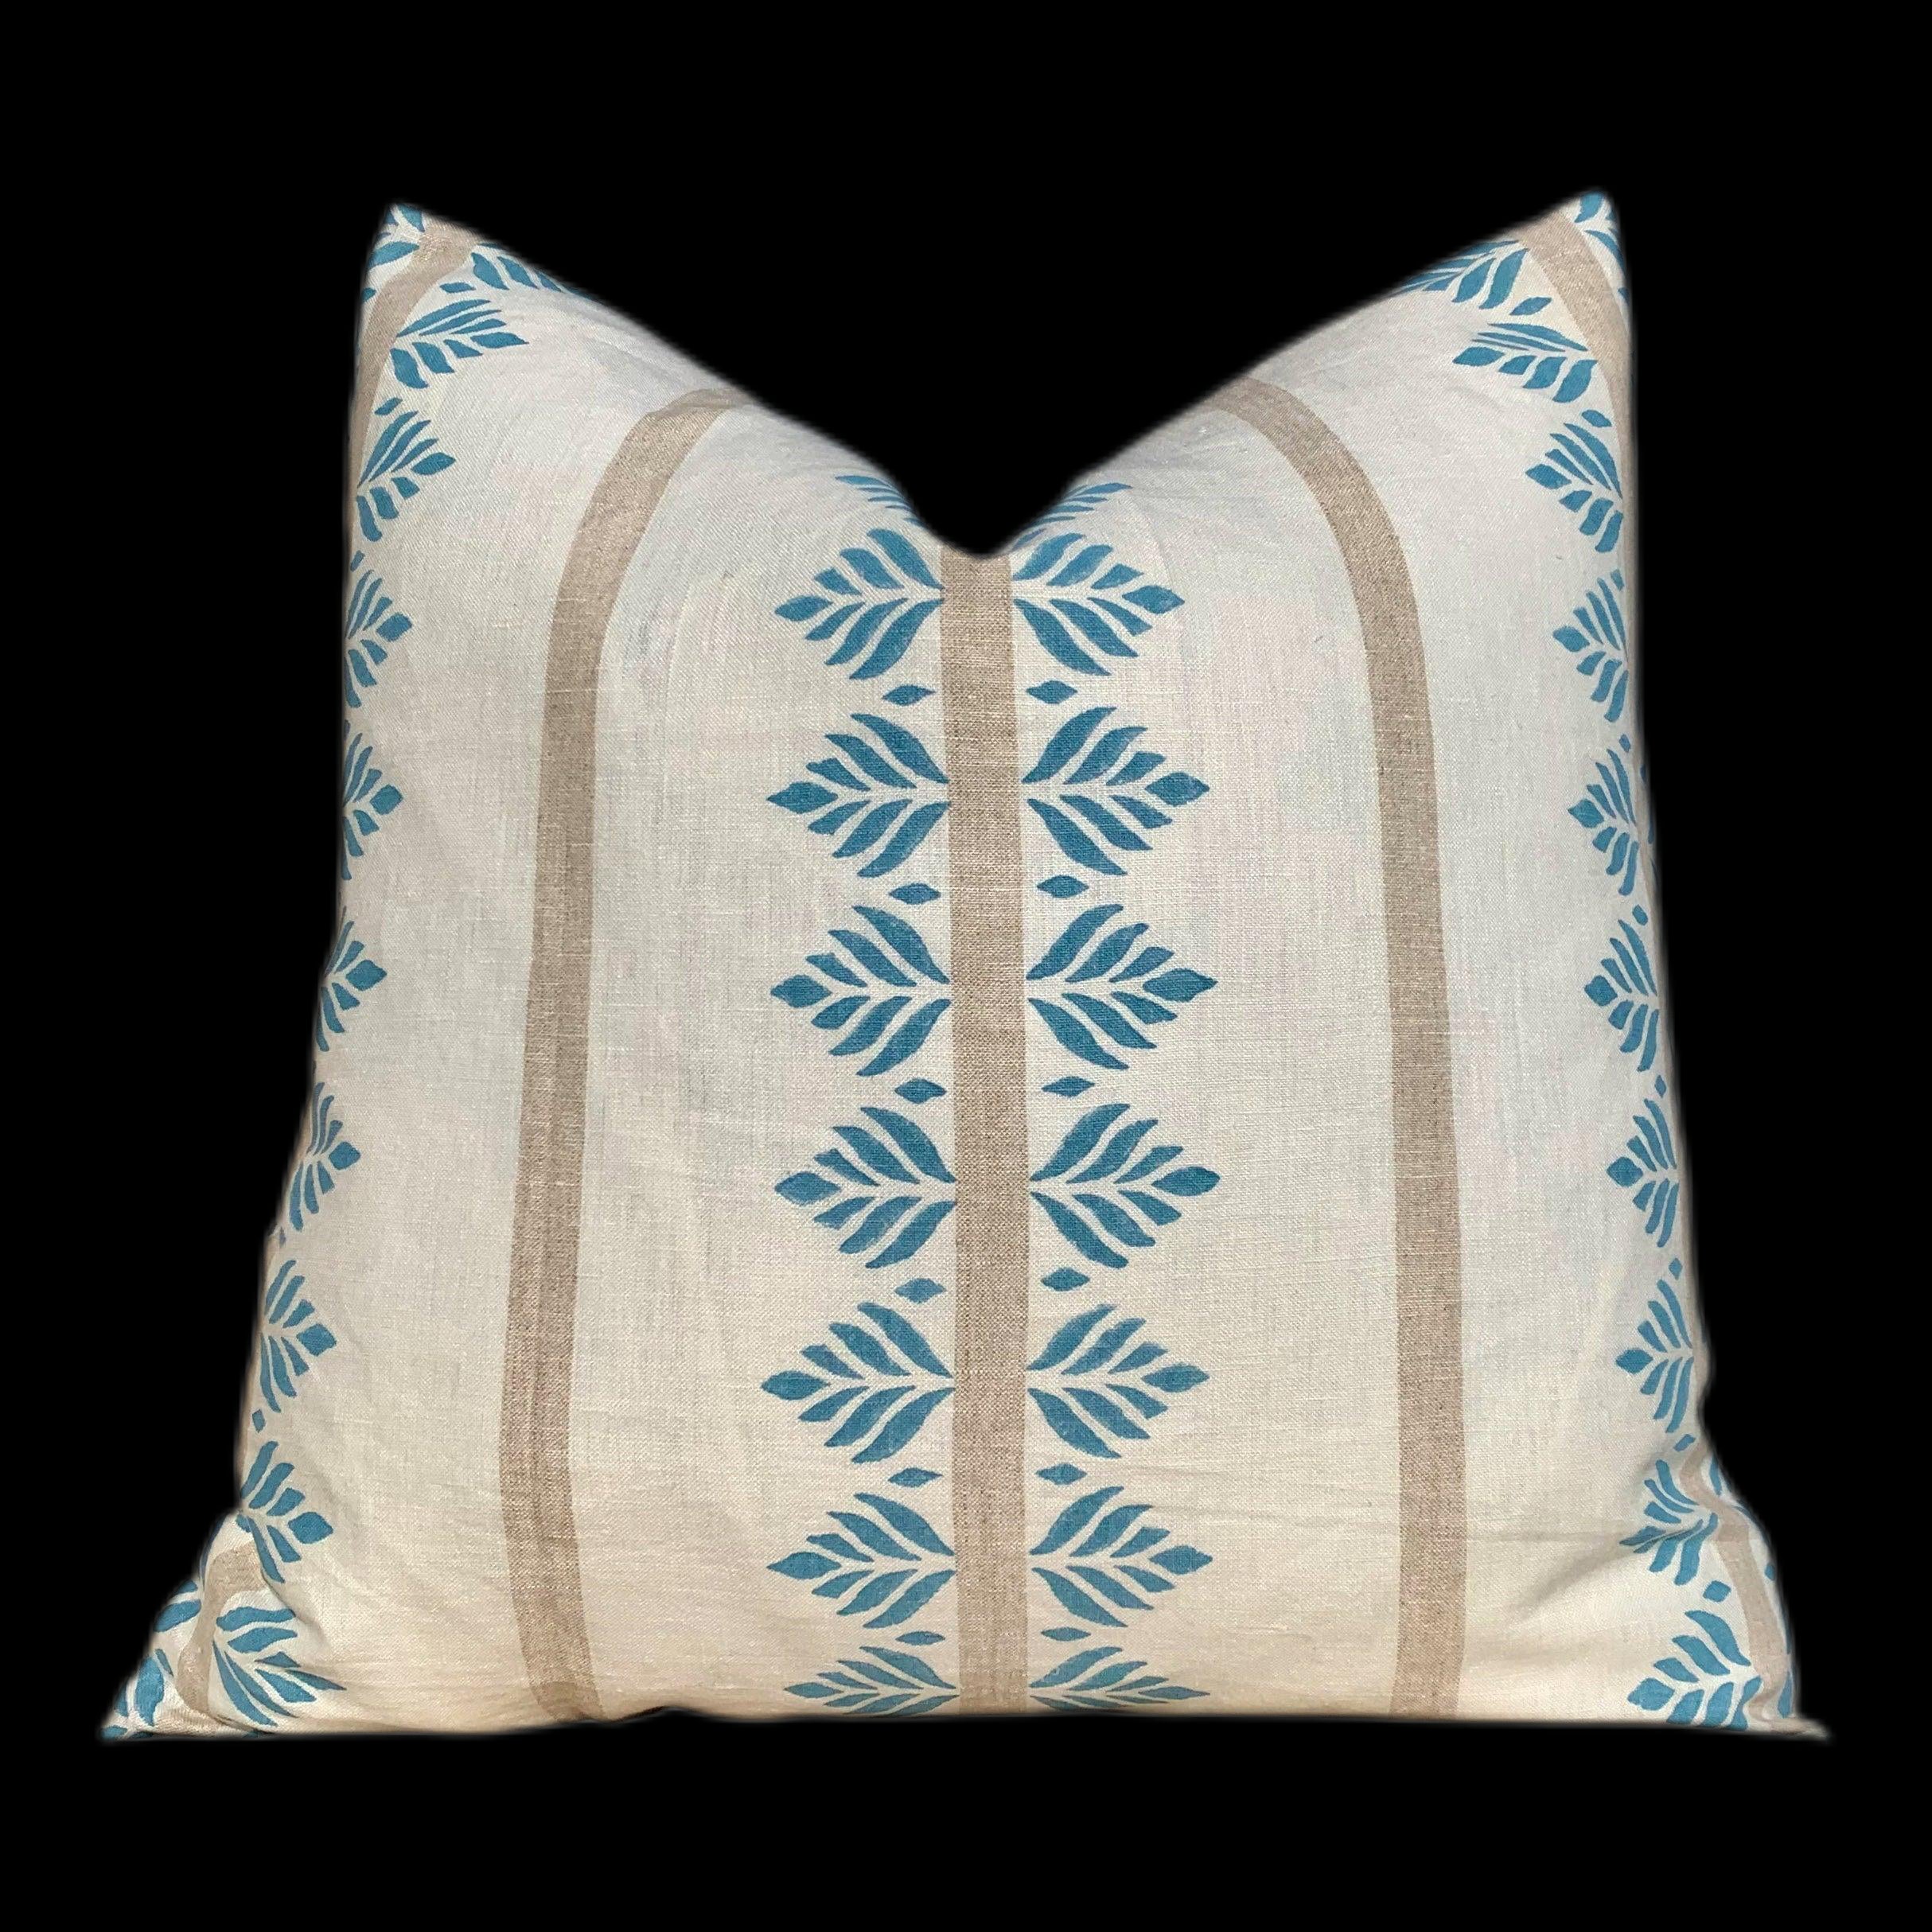 Designer Fern Stripe Pillow in Spa Blue. Accent Stripe Pillow, Decorative Pillow Cover, Designer Throw Pillow, Designer Lumbar Pillow